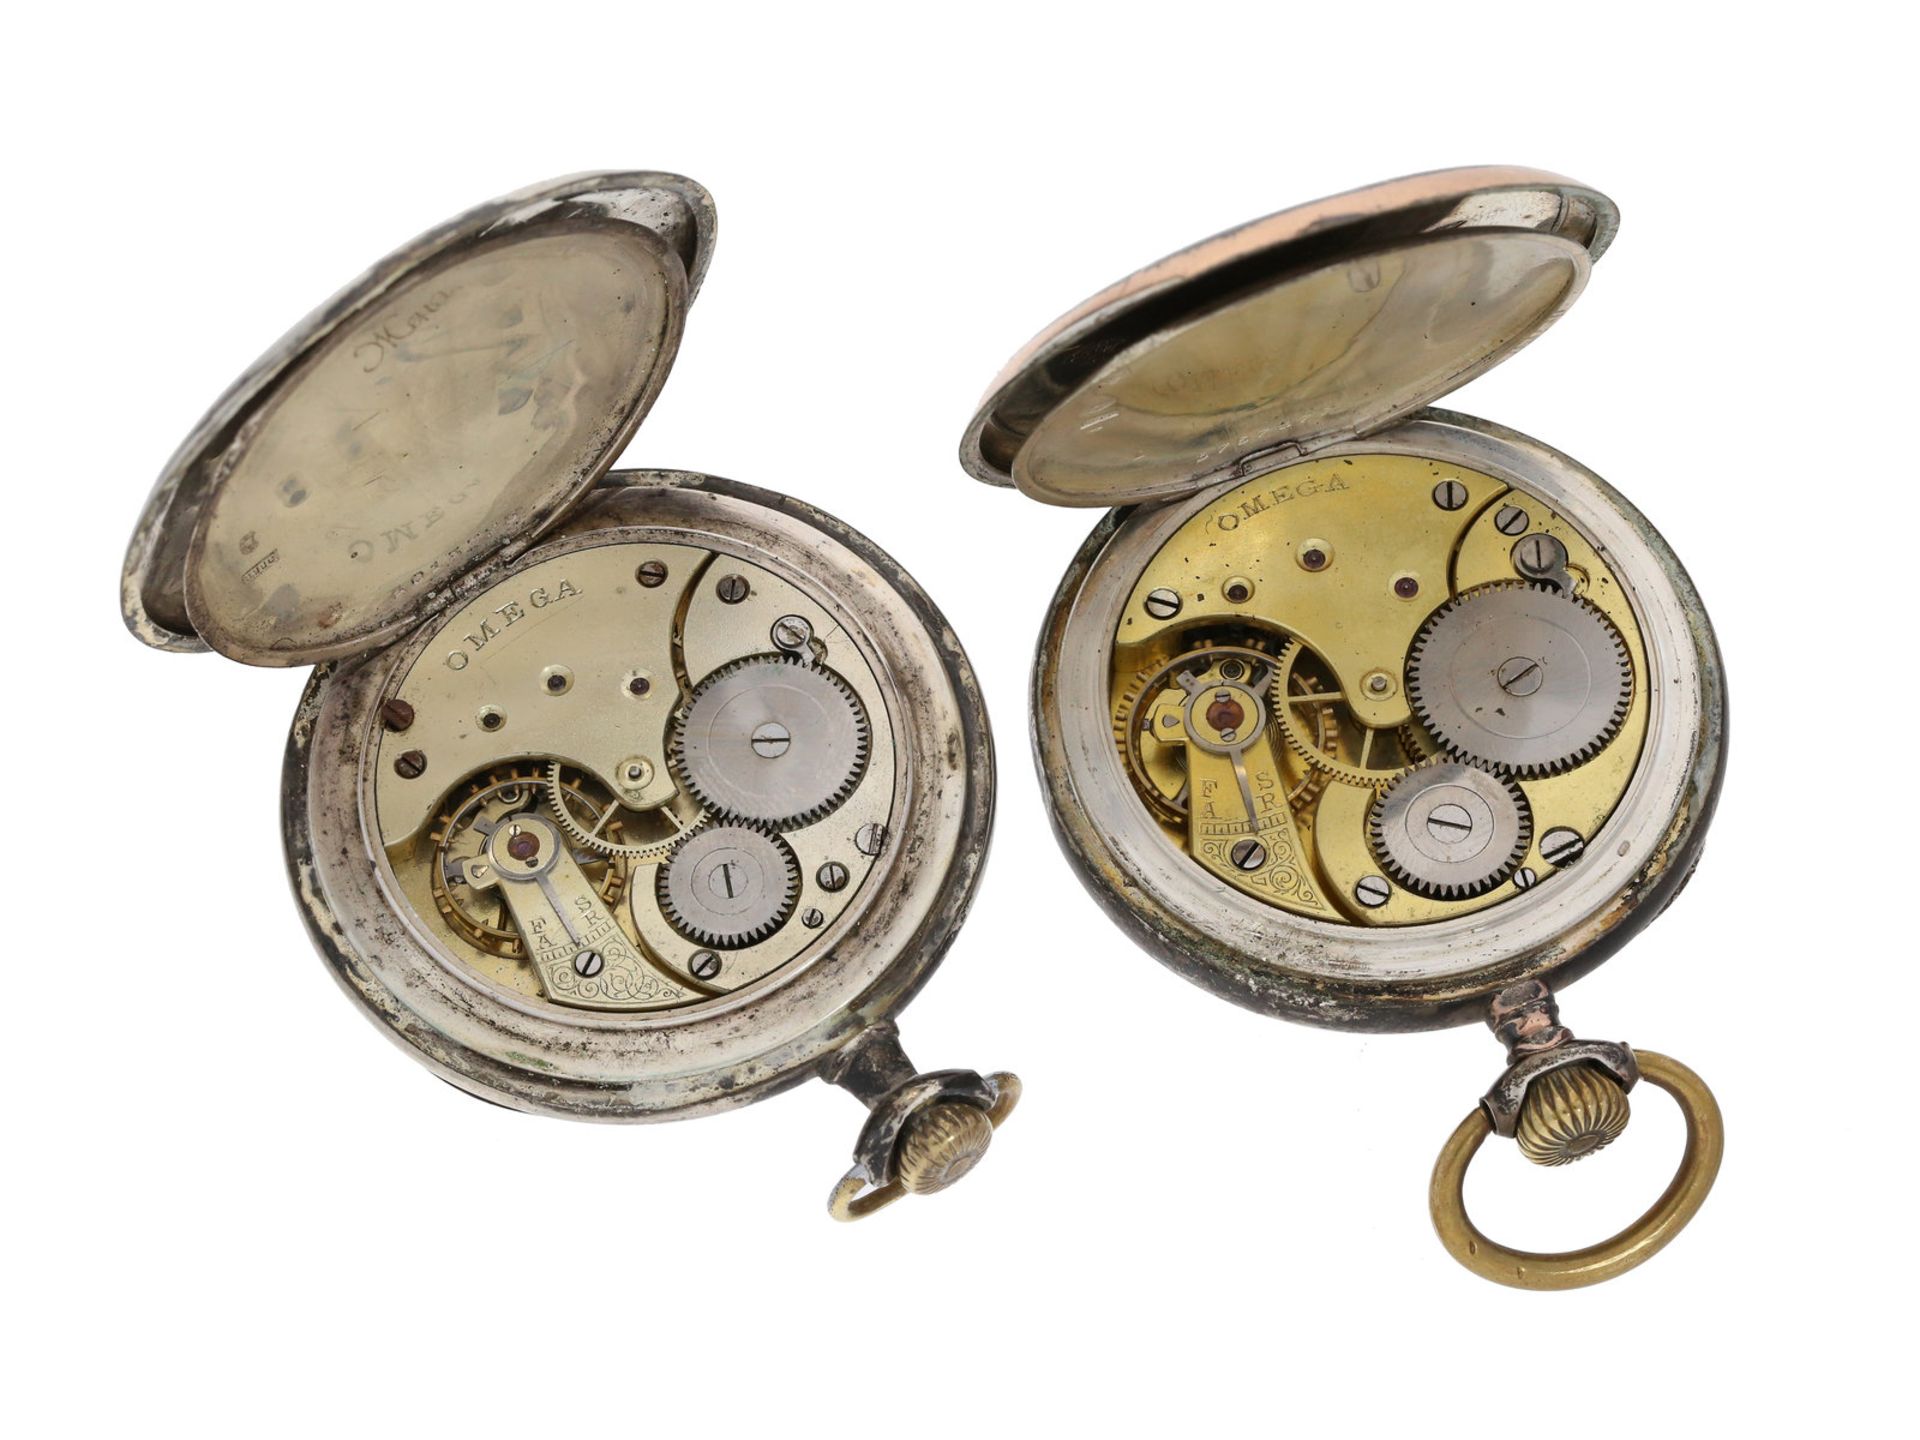 Taschenuhr: Konvolut von 2 antiken Herrentaschenuhren von Omega, ca.1900-19201. ca. Ø50mm, ca. - Bild 3 aus 3